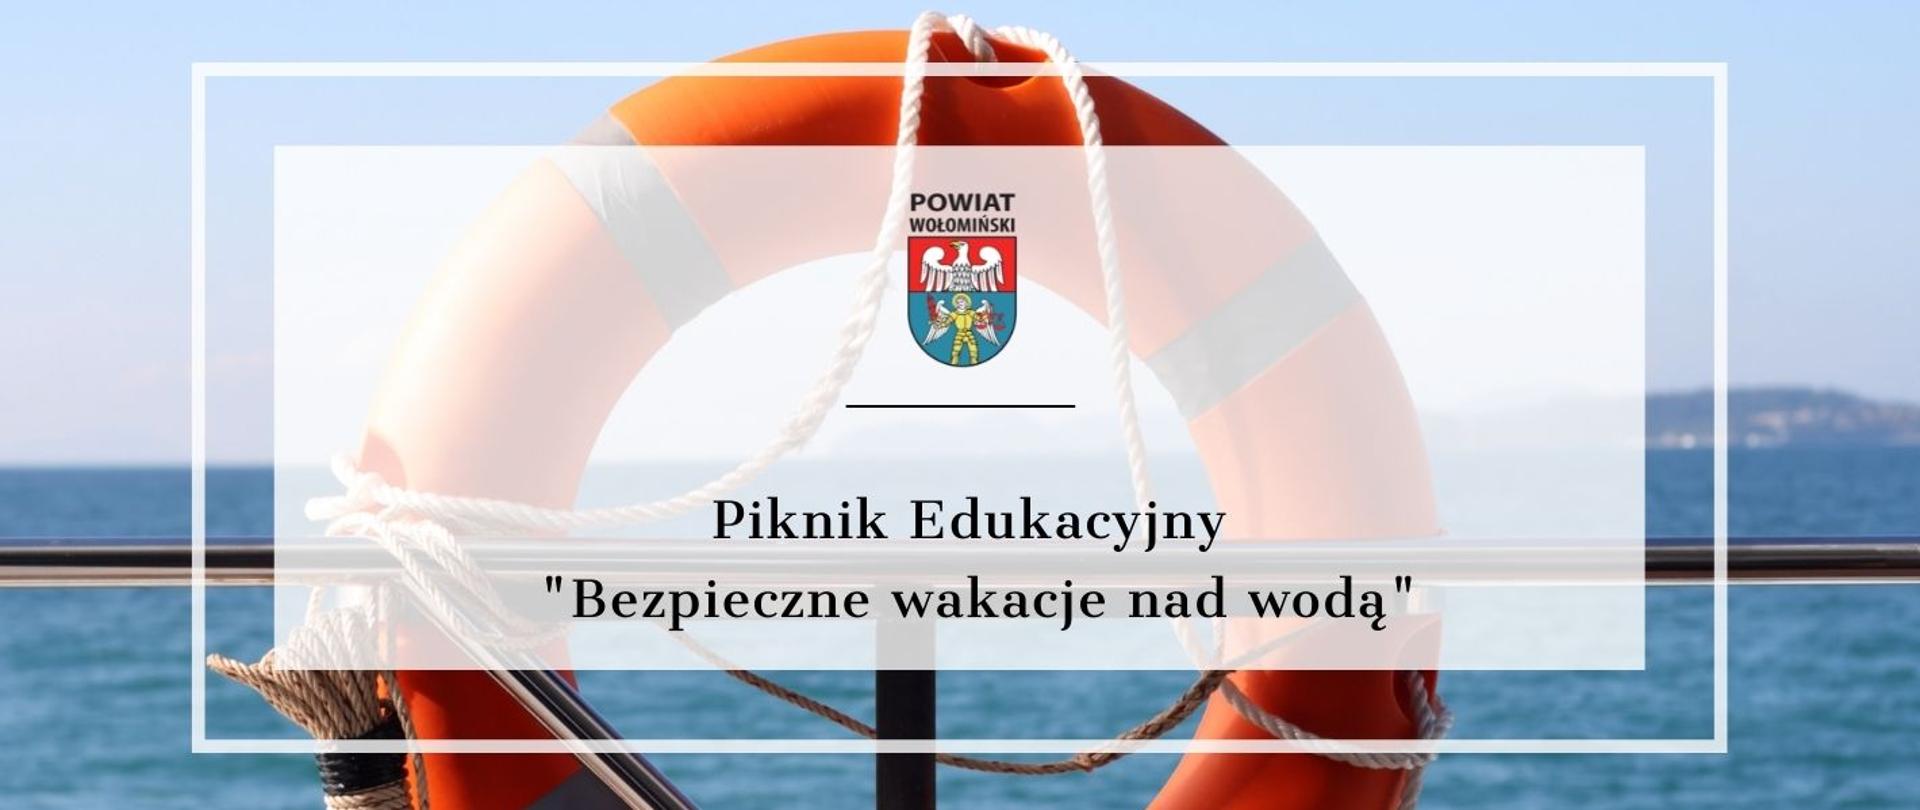 piknik_edukacyjny_Bezpieczne_Wakacje_nad_wodą